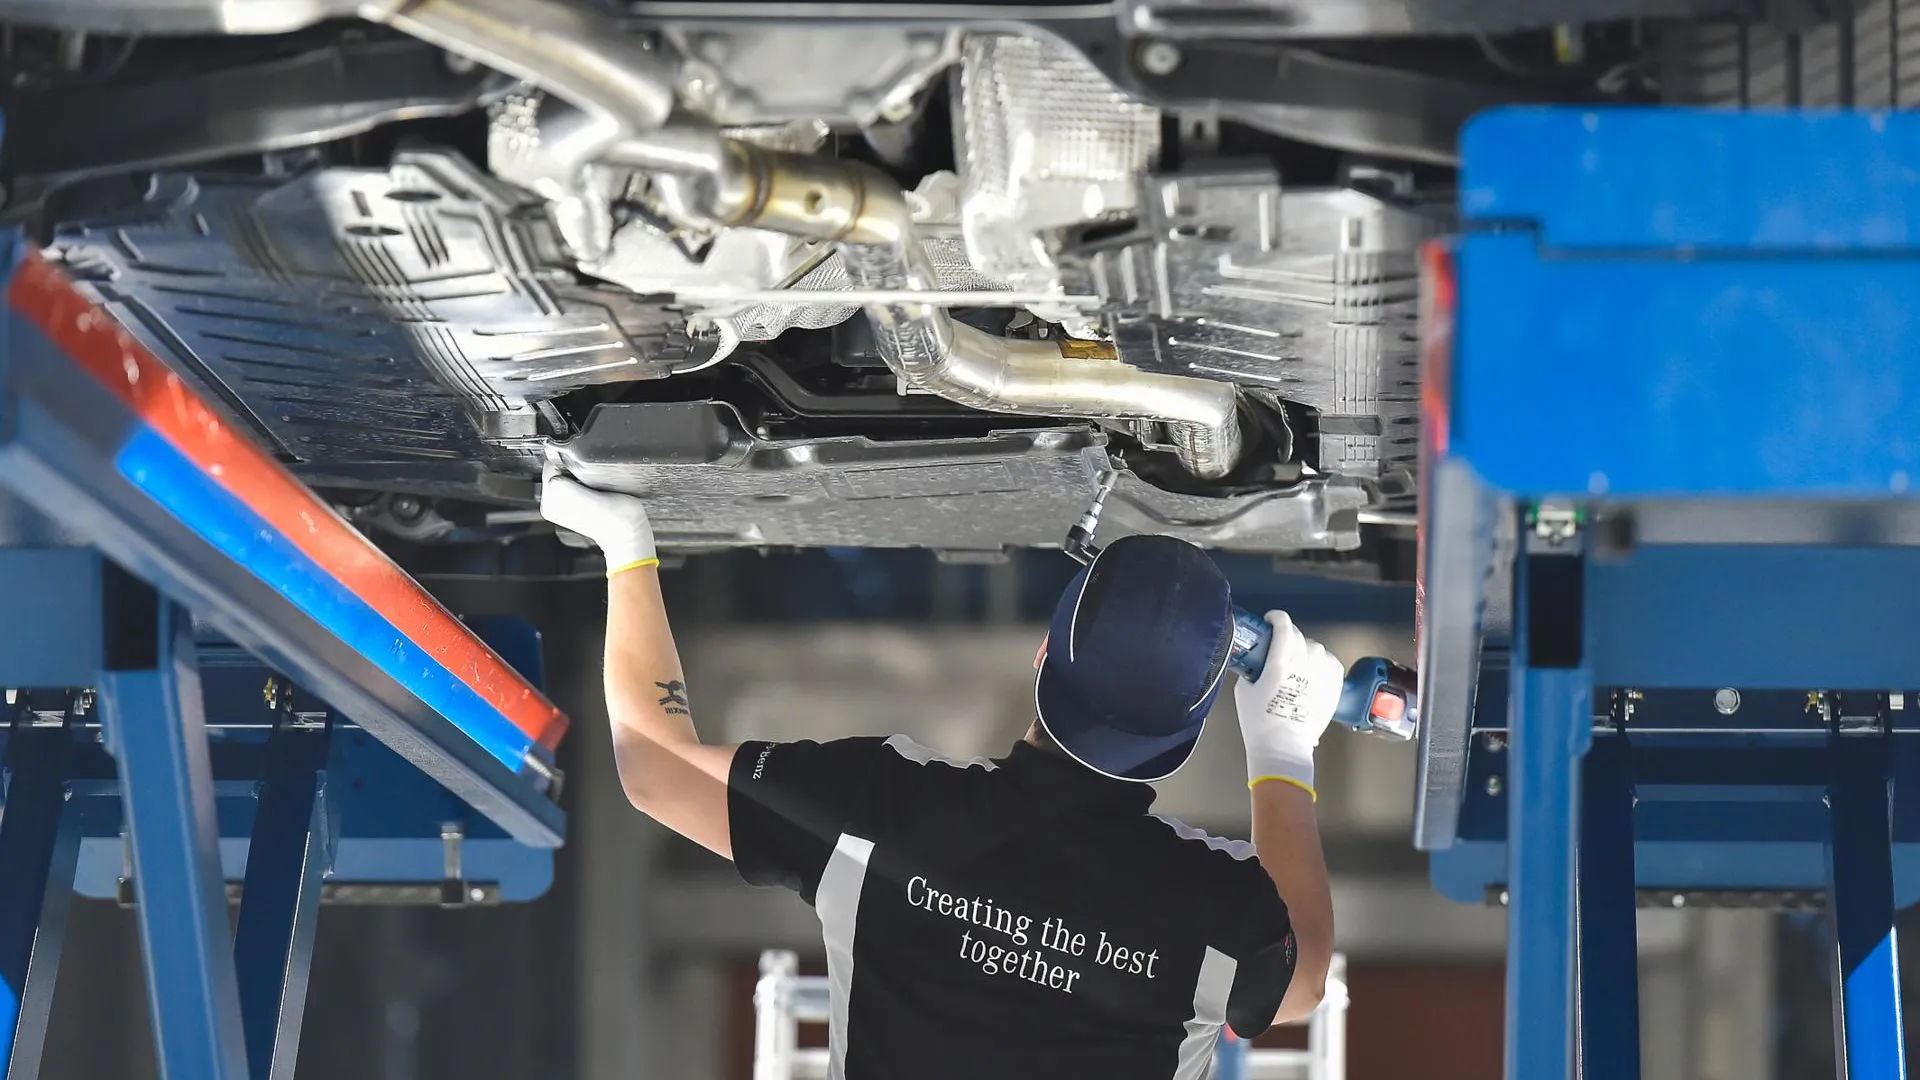 Количество сотрудников подмосковного завода Mercedes к концу года вырастет до 900 человек